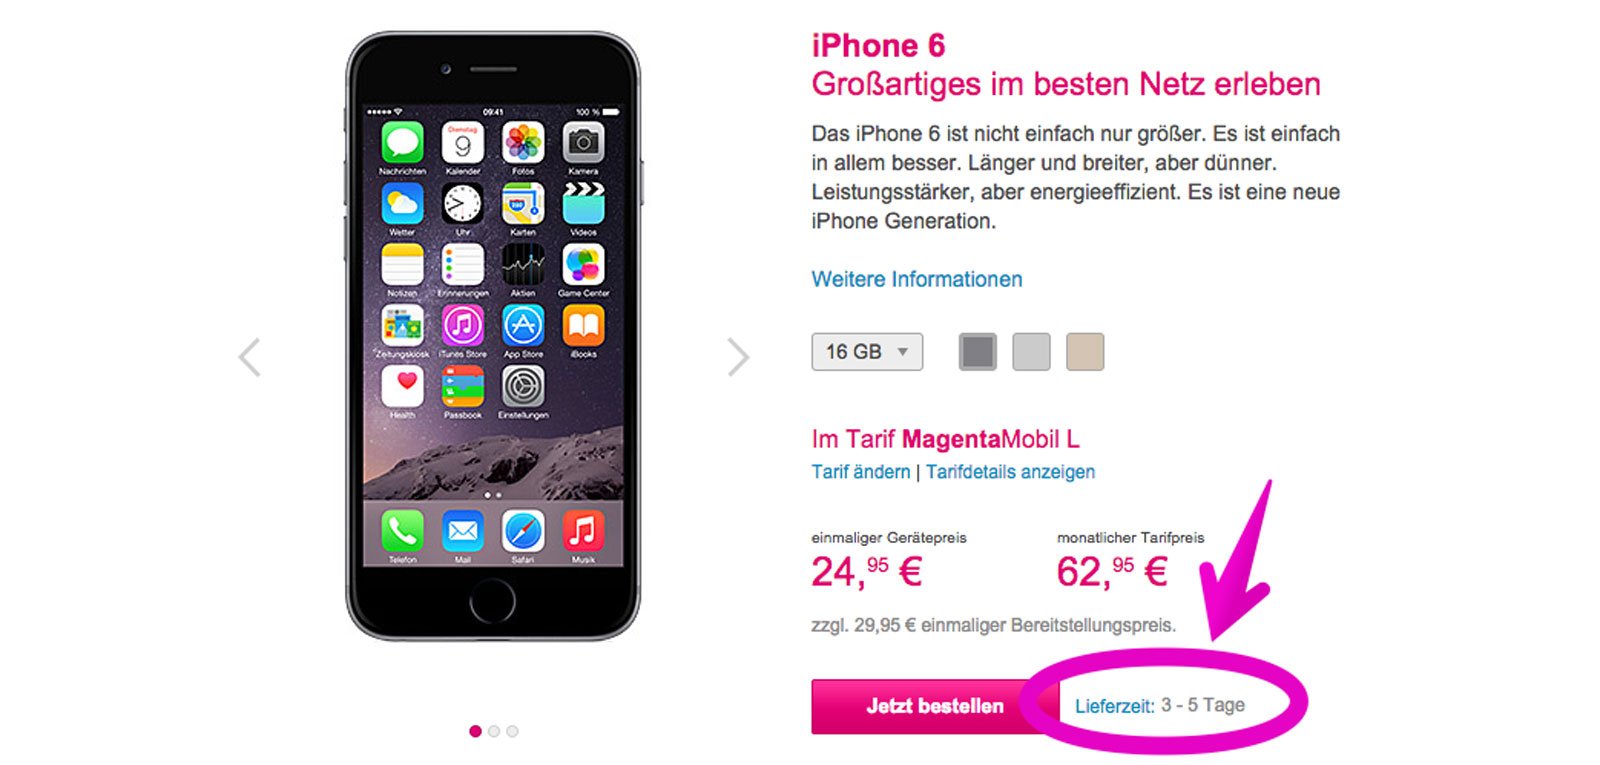 Telekom liefert iPhone 6 schneller! 4